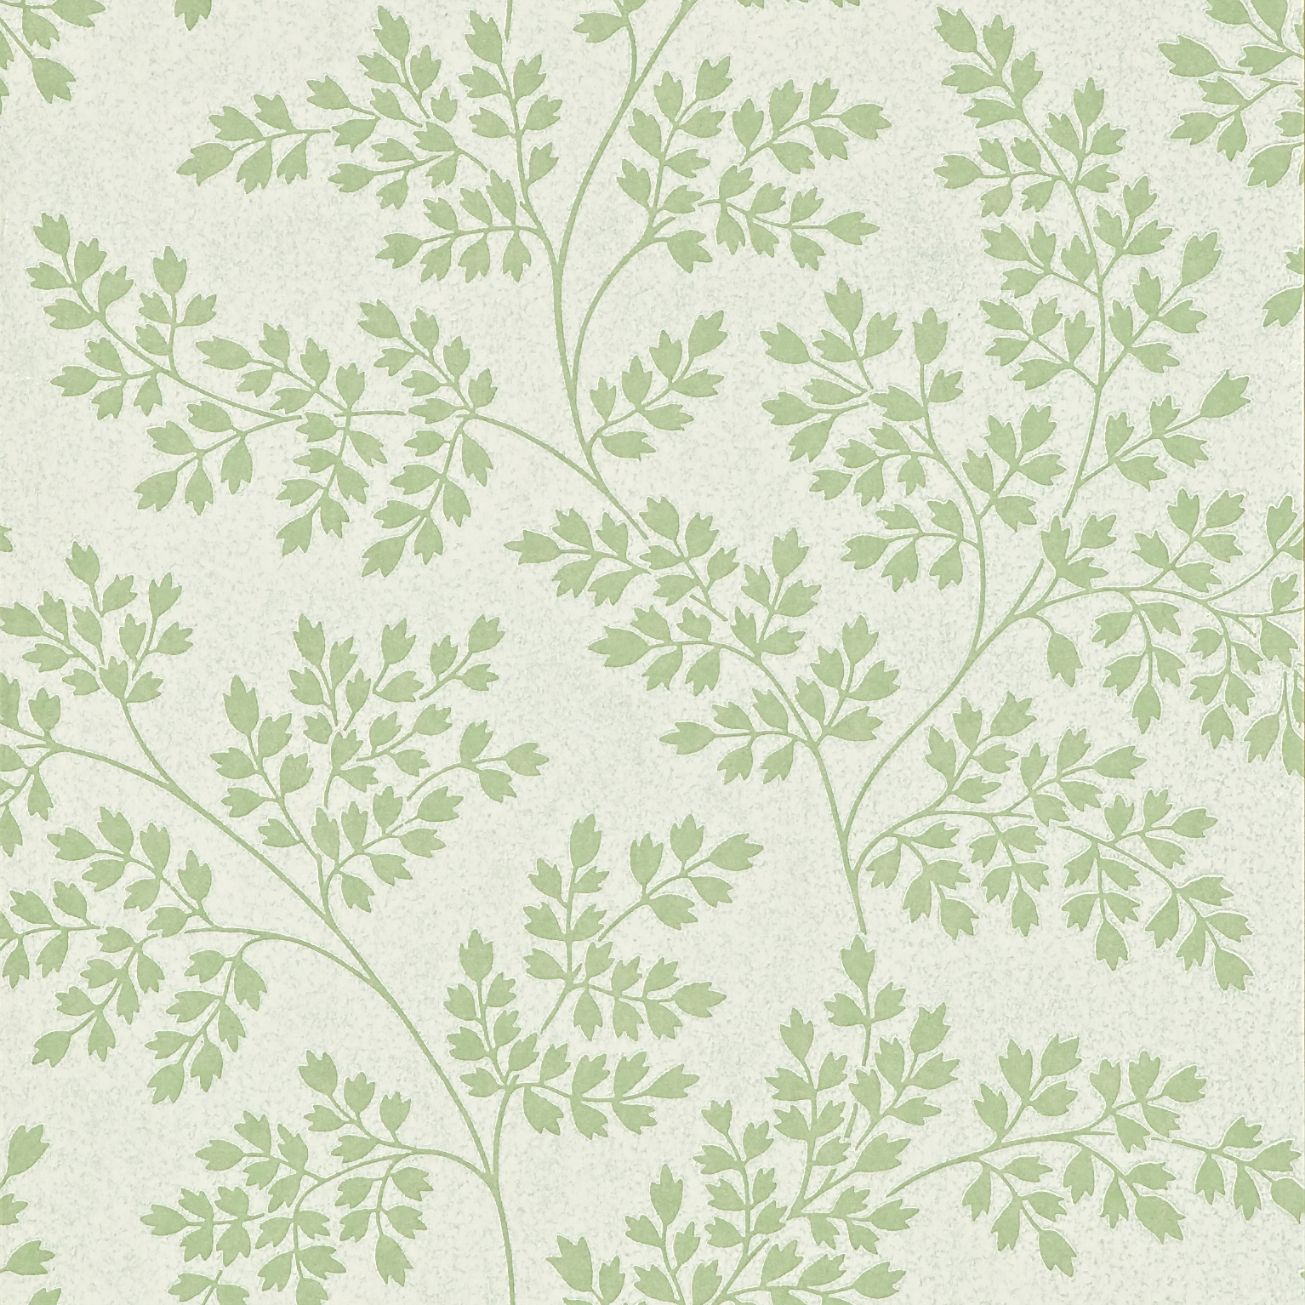 Leaf Wallpaper Design Green Ivory